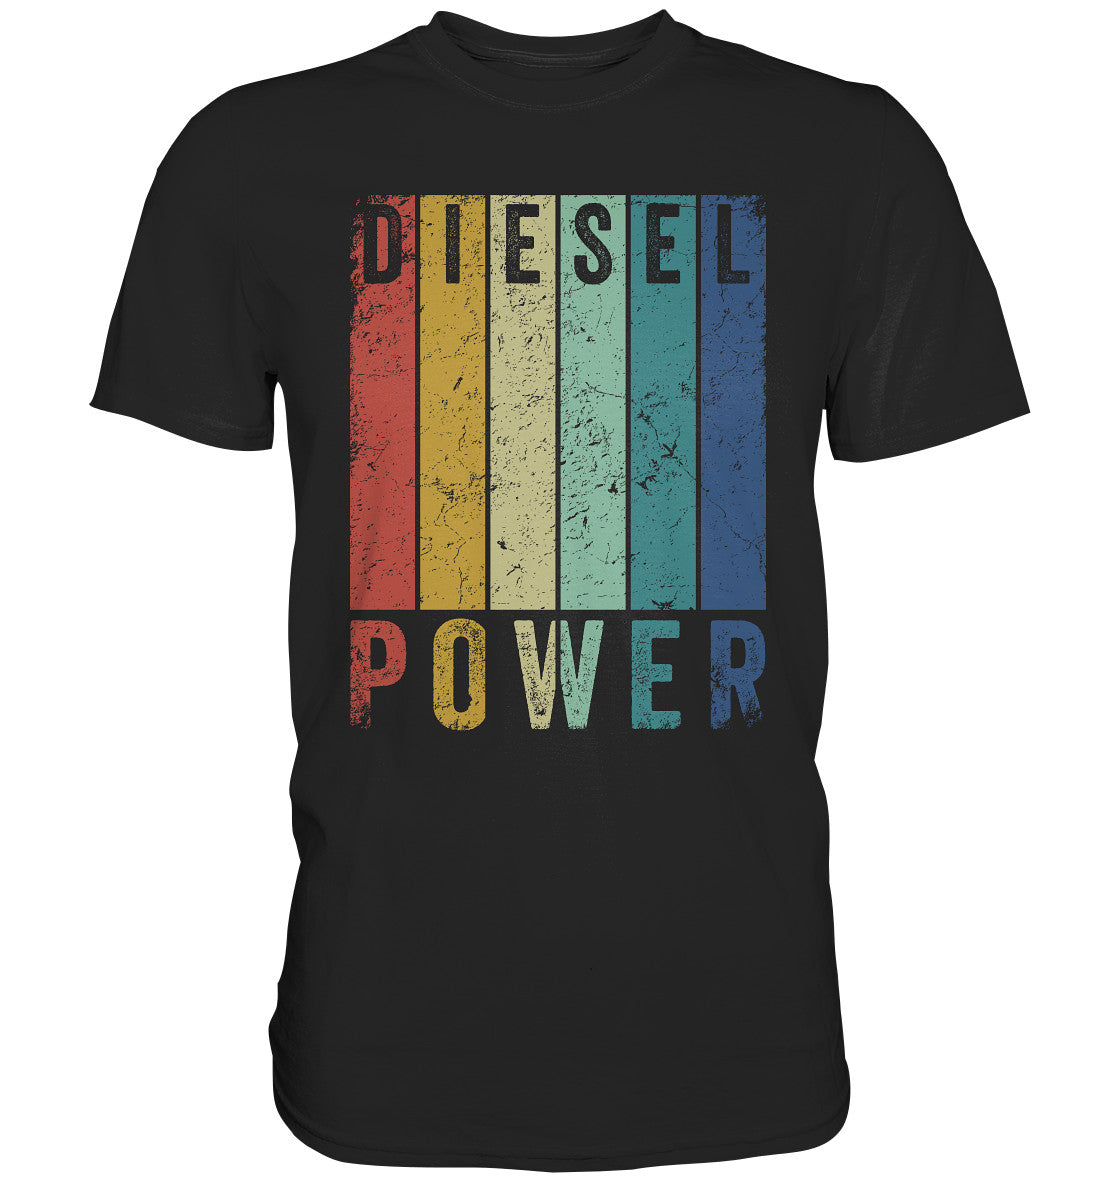 Diesel Power - Premium Shirt